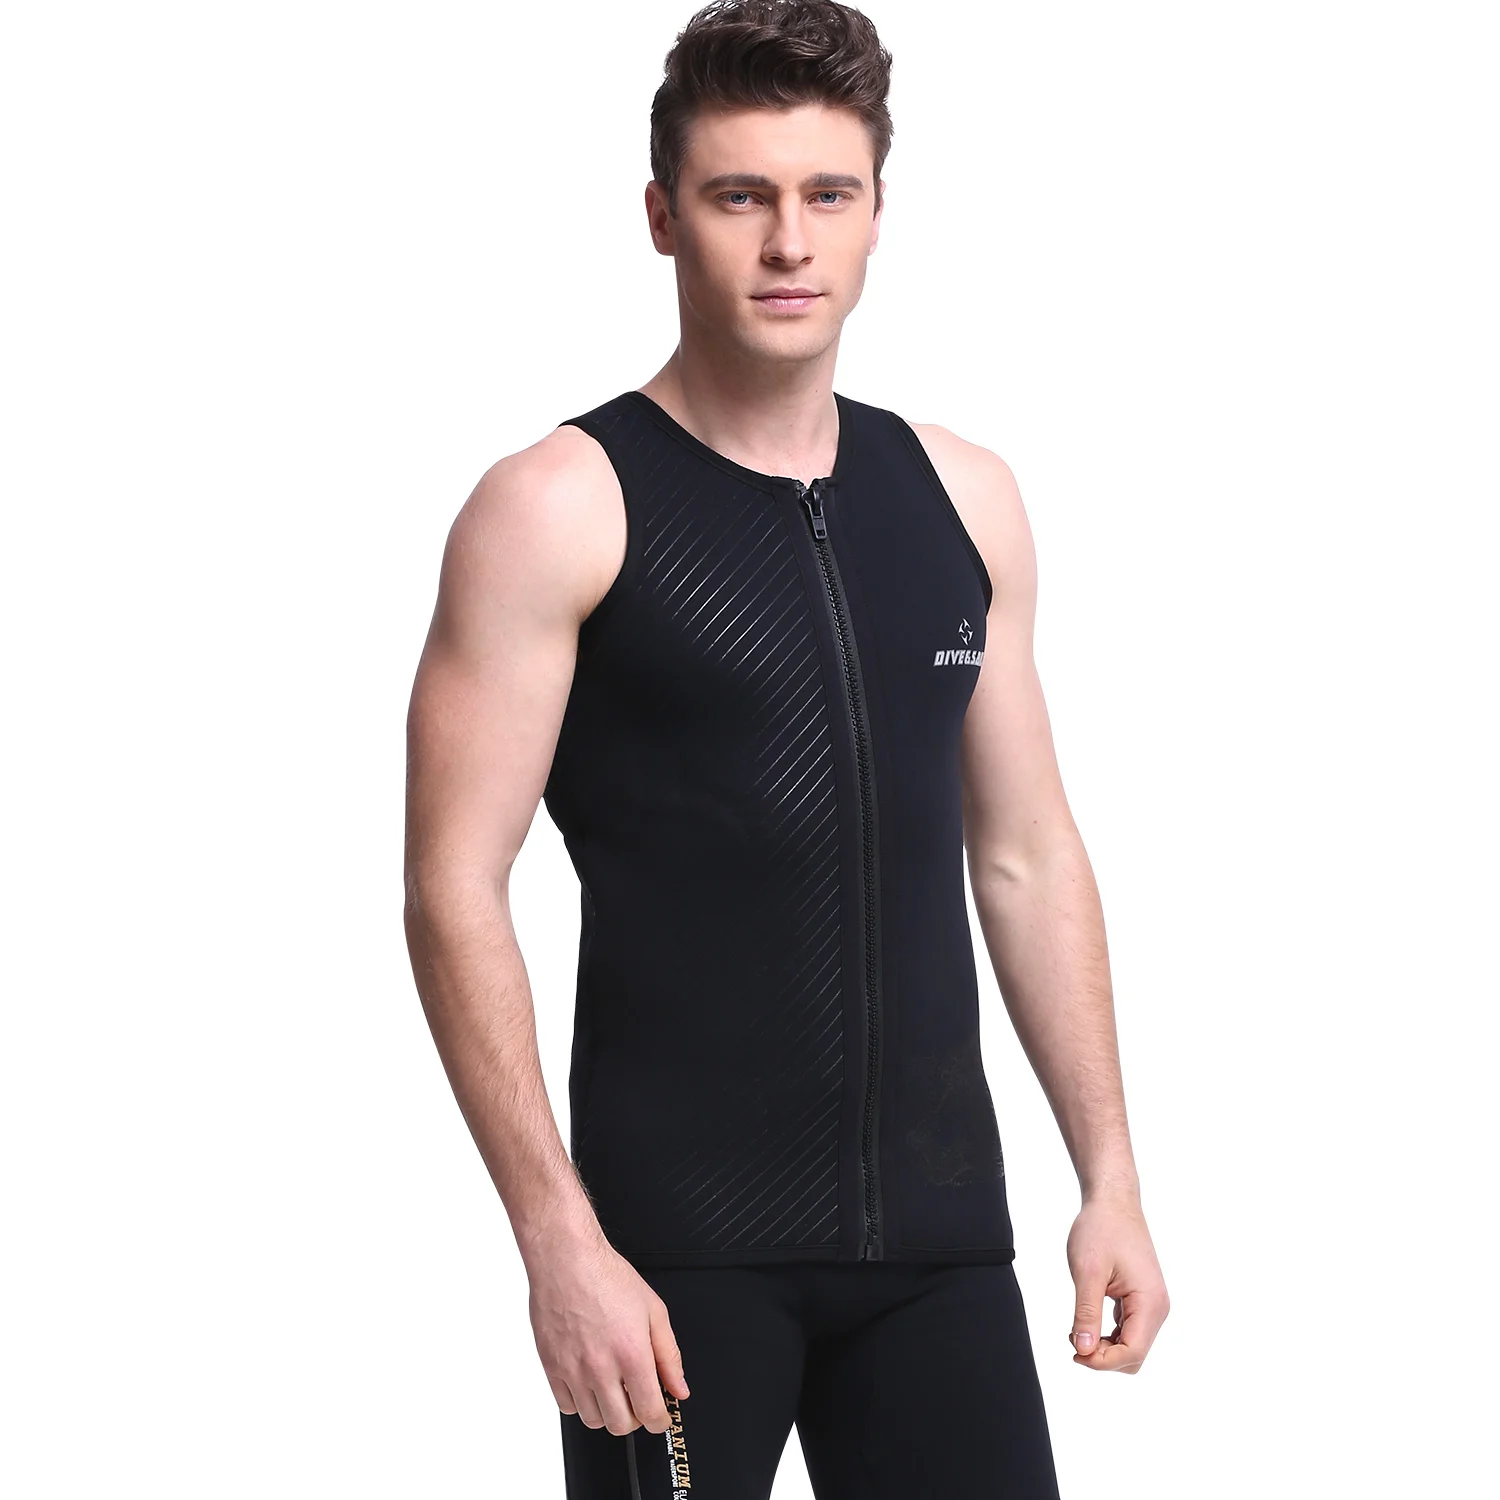 Dive&sail 3mm neoprene men's wetsuit vest sleeveless front zipper Jumpsuit  Dive for kitesurfing suit diving swimsuit size s xxxl|Wetsuit| - AliExpress